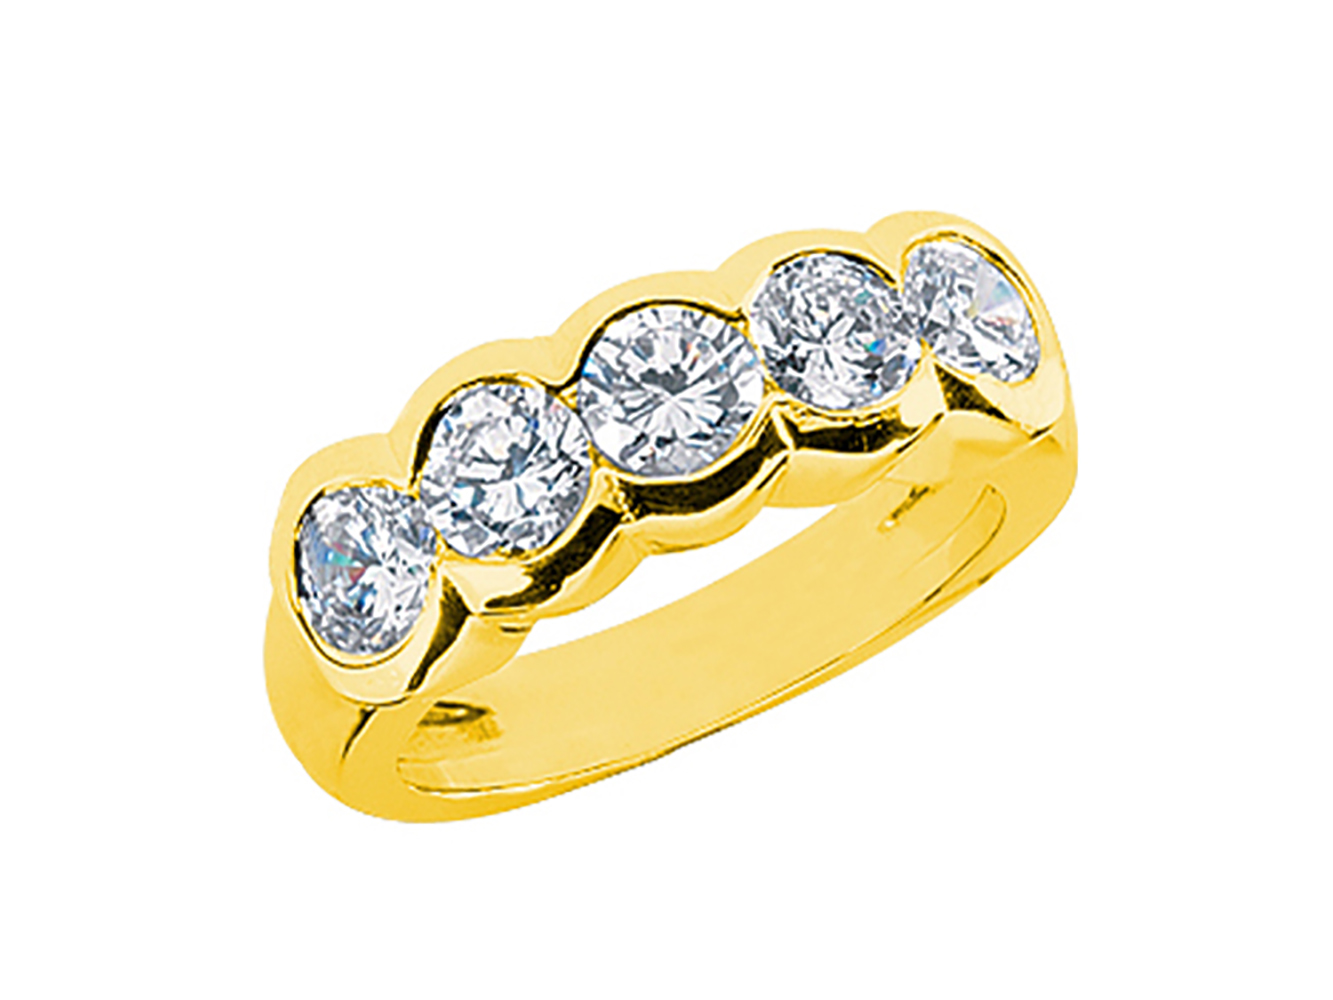 Diamond Wedding Band Ring 0.75 Ct Round Cut 14K Yellow Gold 7 stone Anniversary 